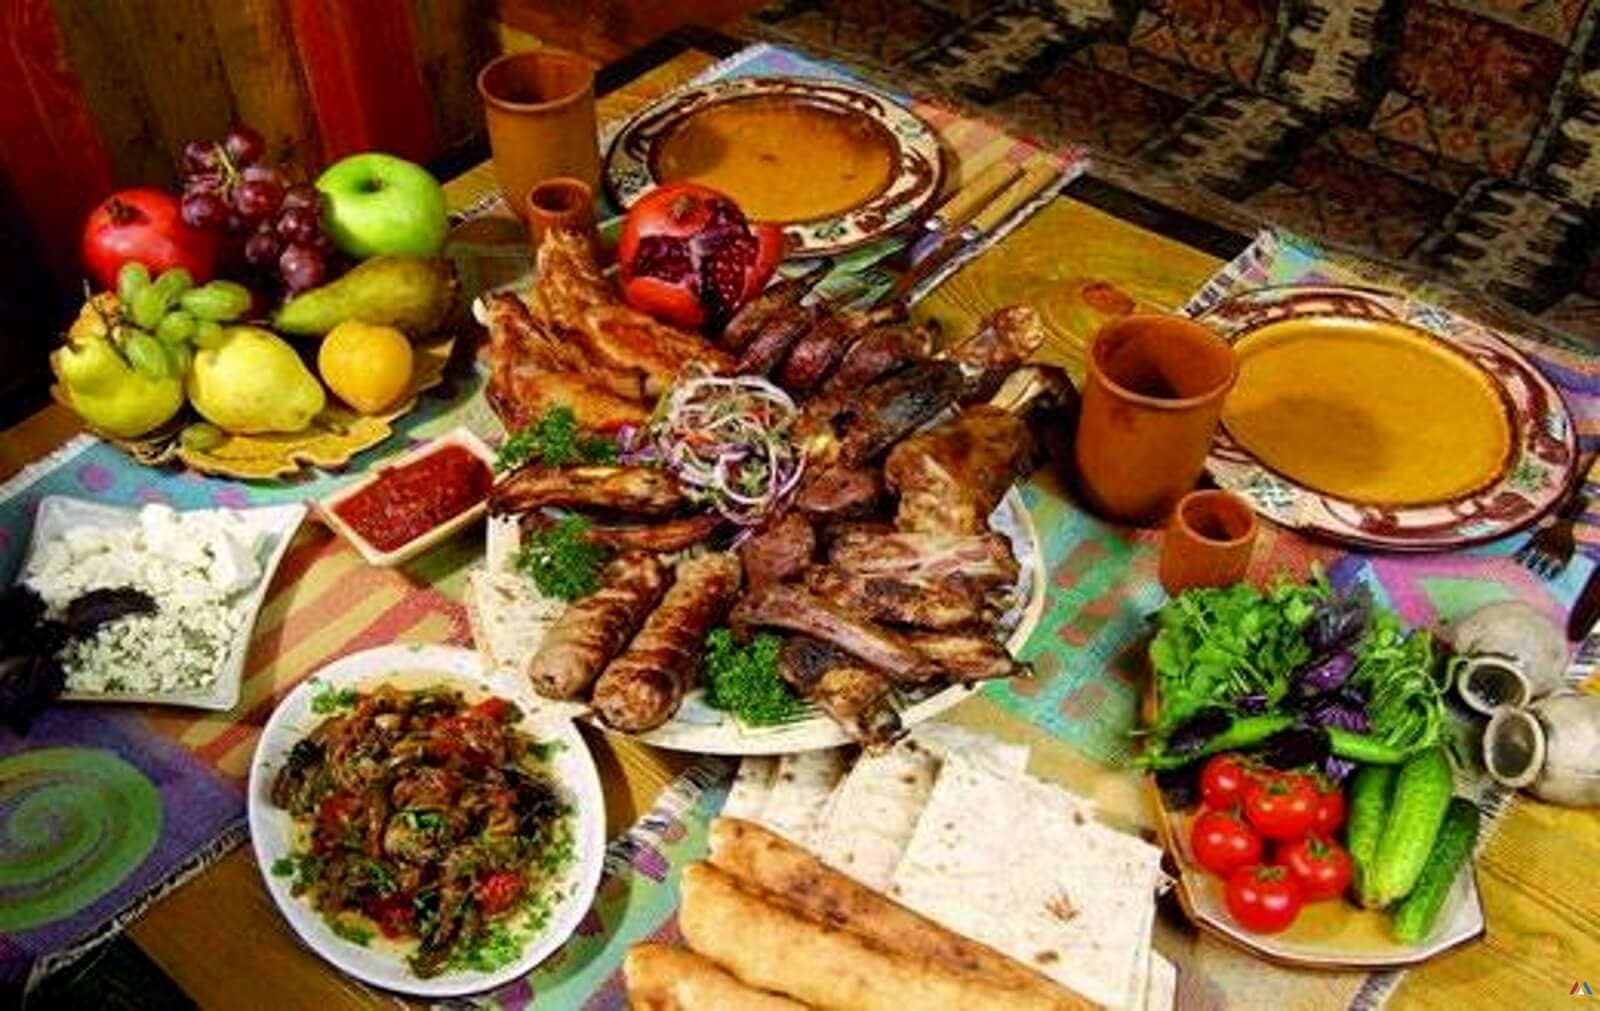 Հայկական խոհանոց